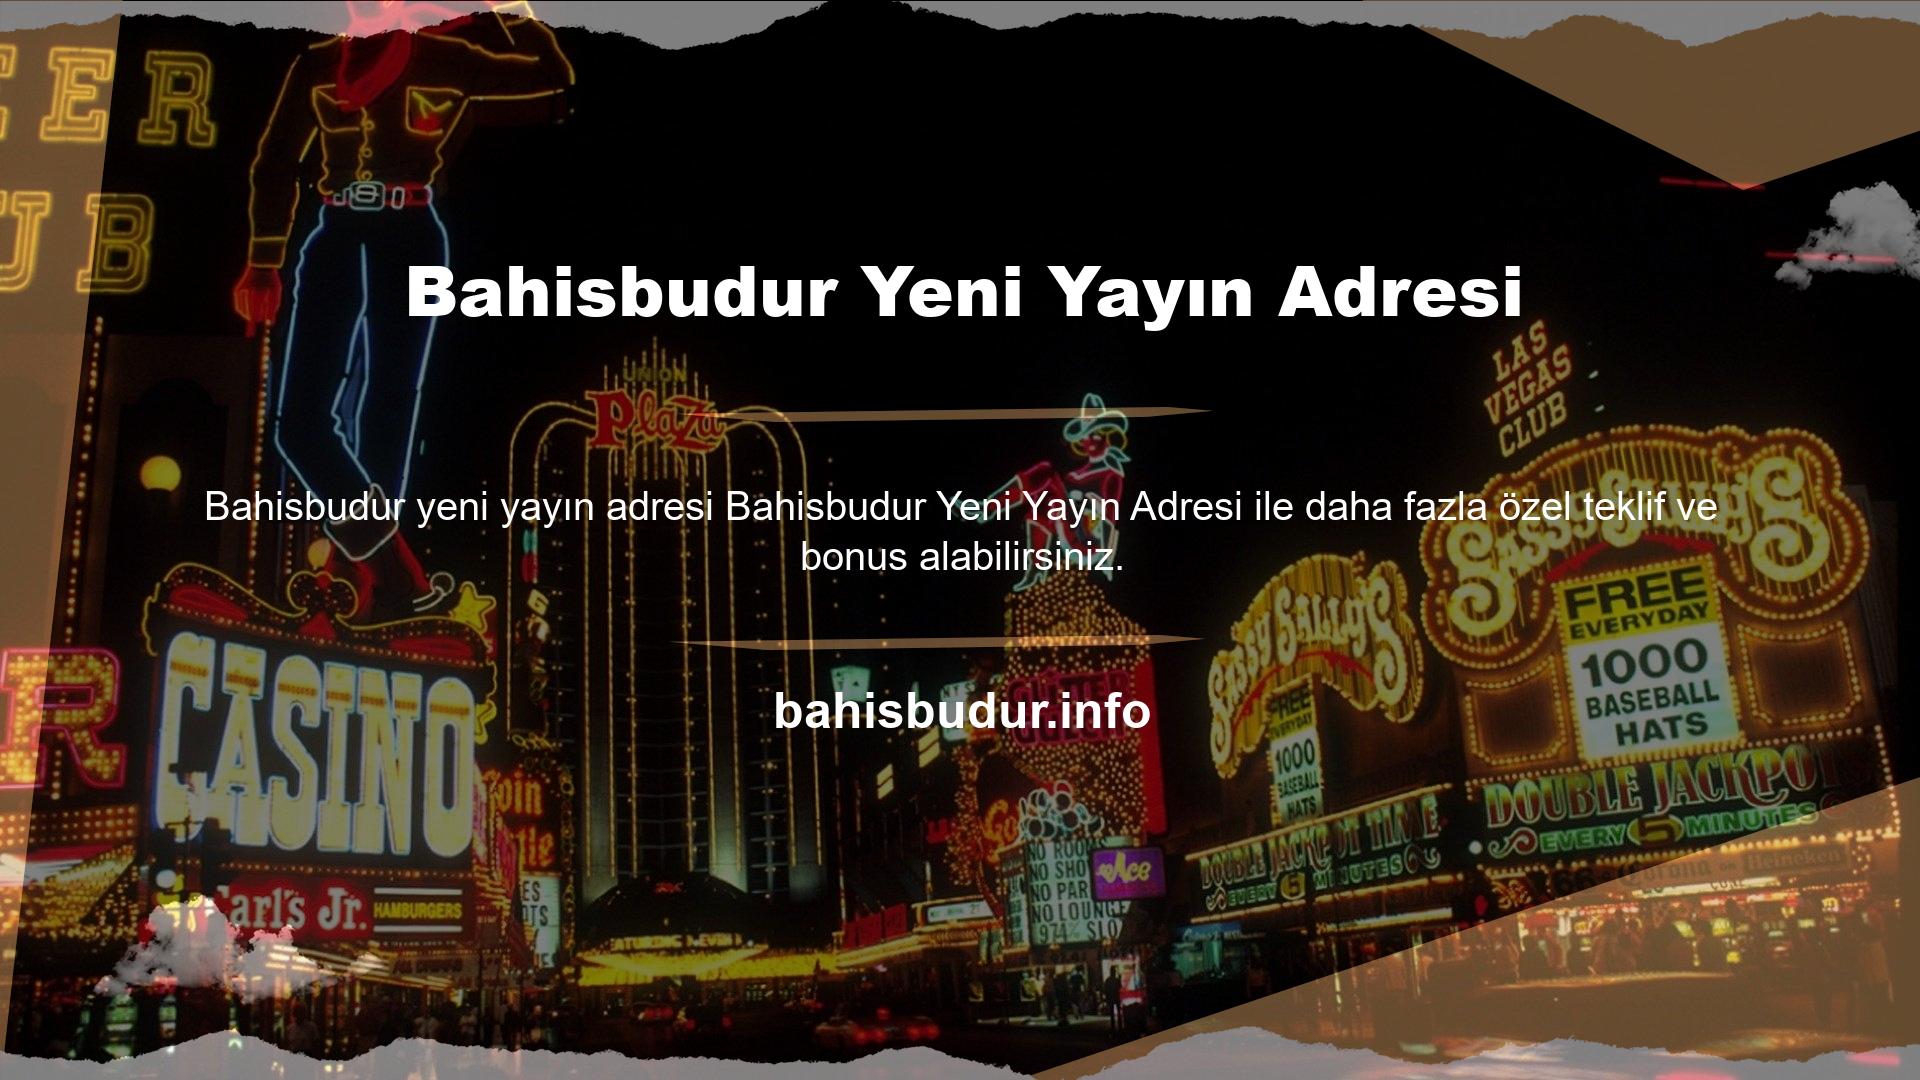 Bahisbudur Yeni Yayın Adresi